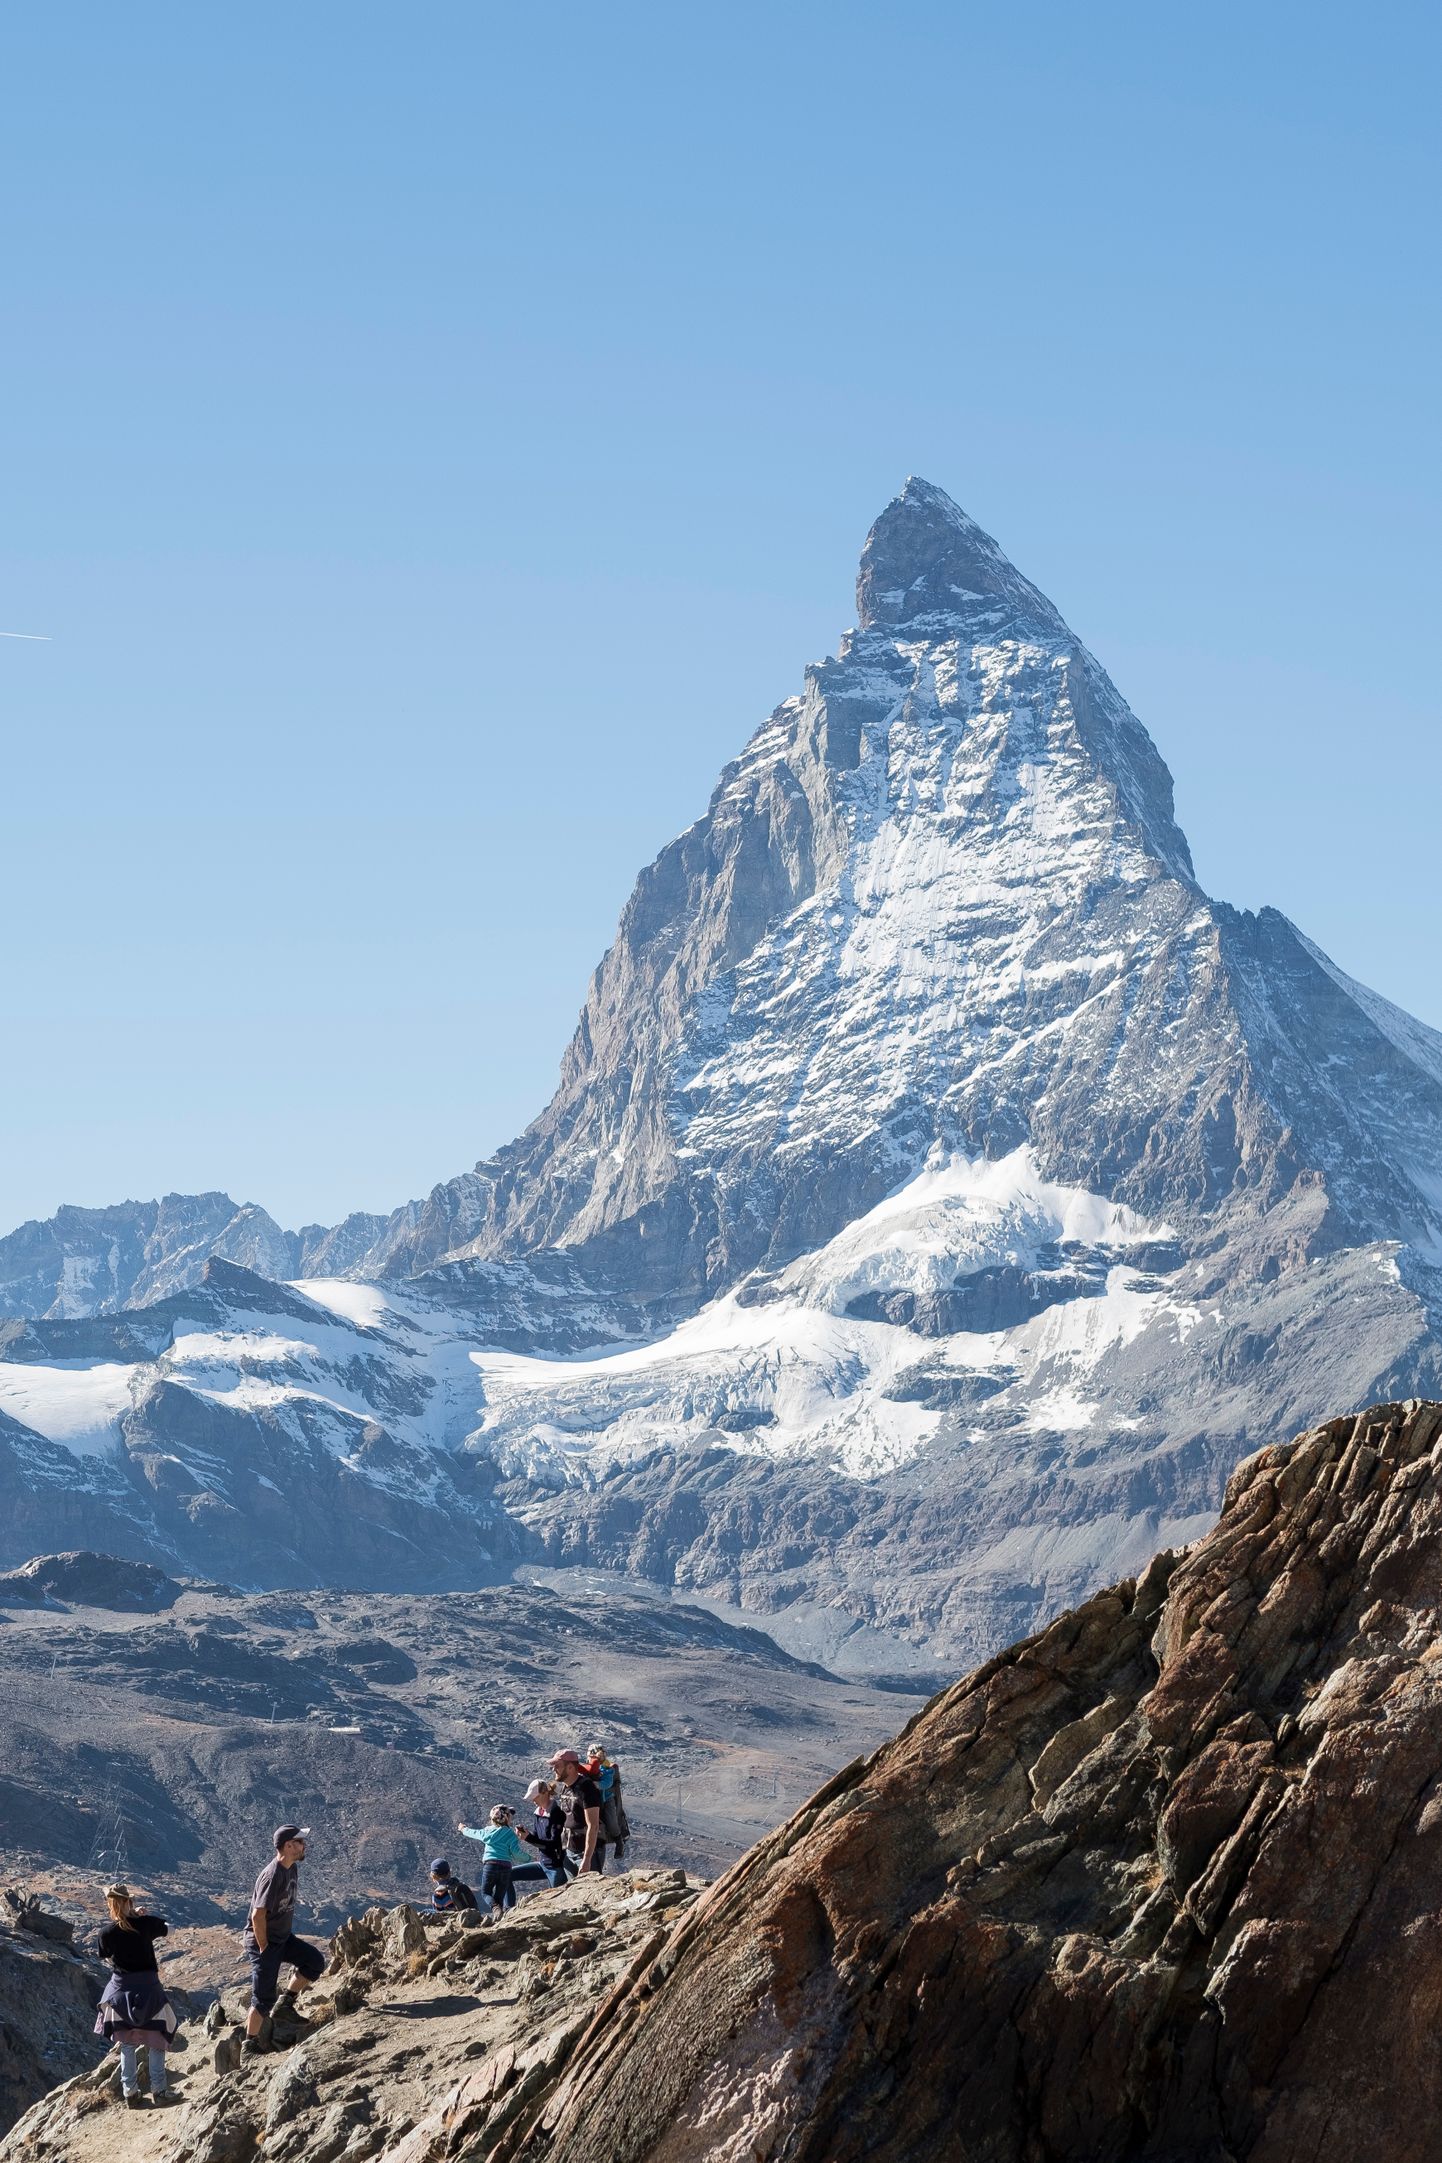 Гора Маттерхорн в Швейцарских Альпах, где весной 2018 года пропал немецкий миллиардер.